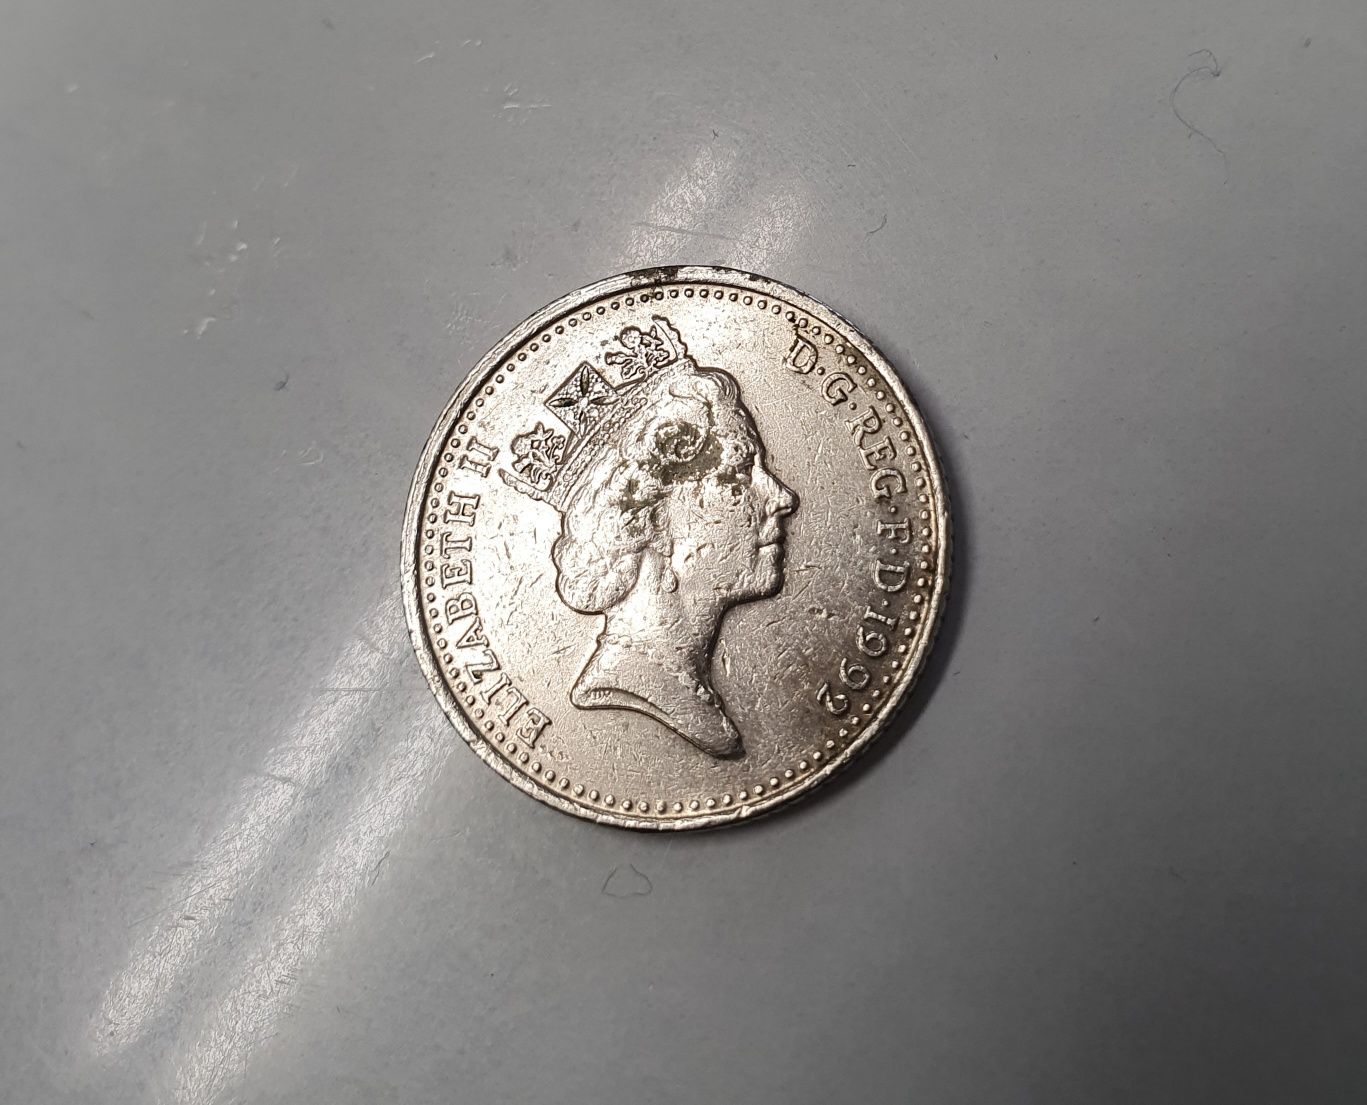 Vendo moedas antigas